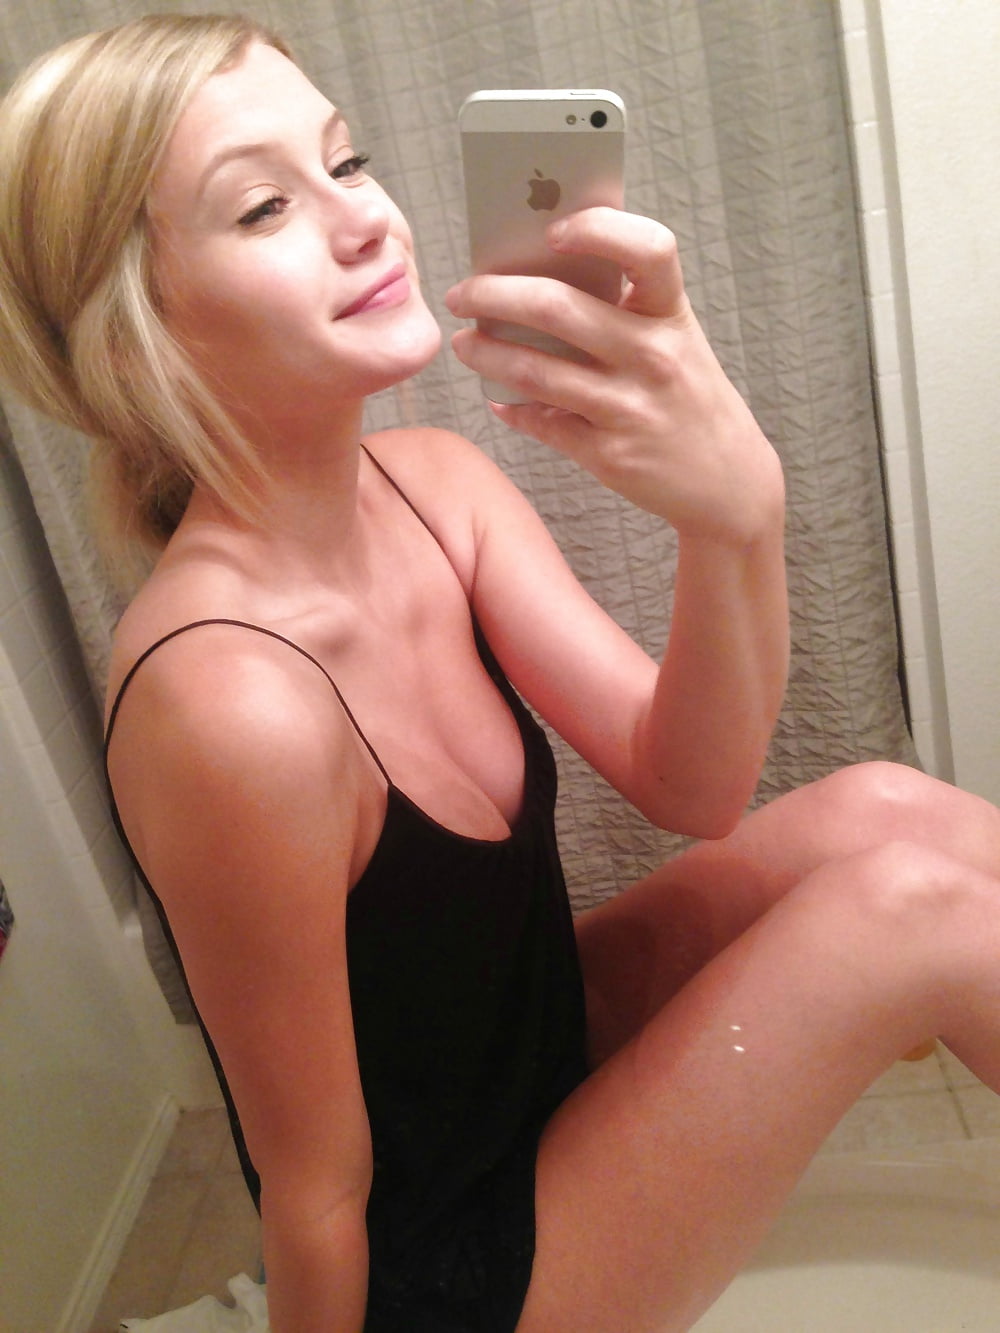 Blonde teen nude iphone selfies adult photos